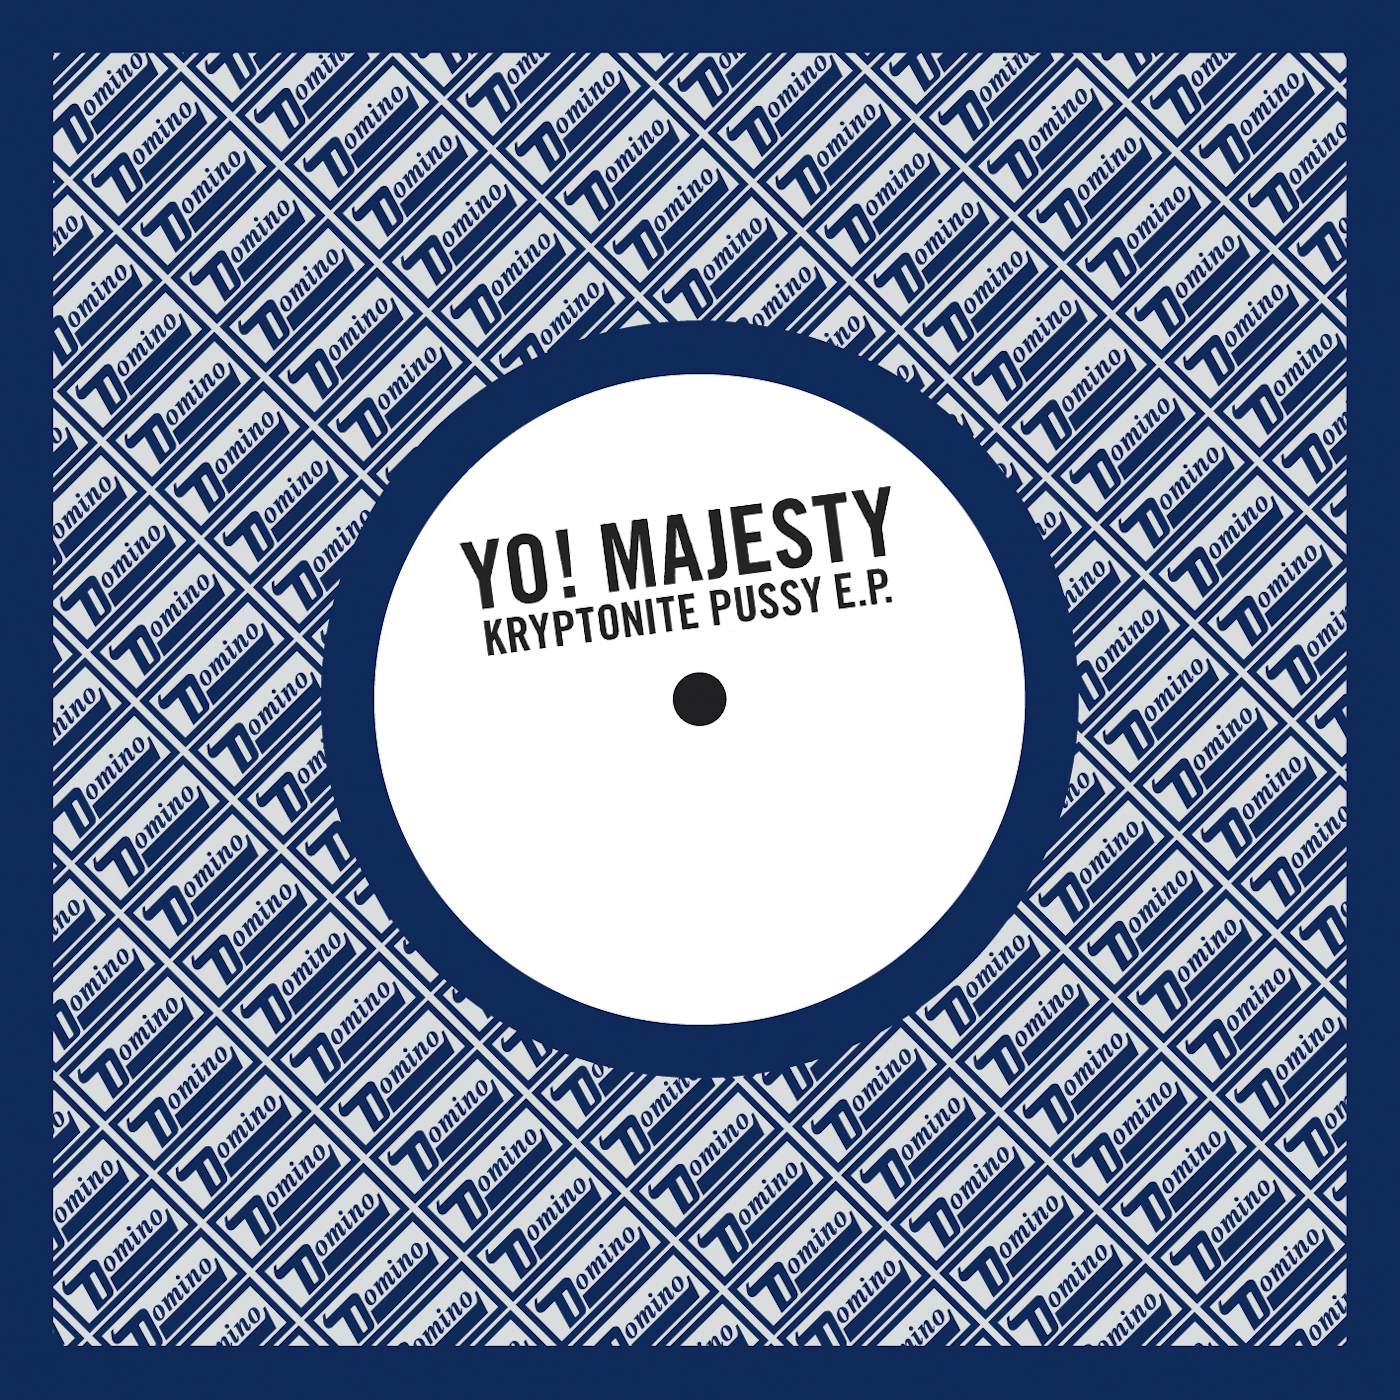 Yo Majesty KRYPTONITE PUSSY Vinyl Record